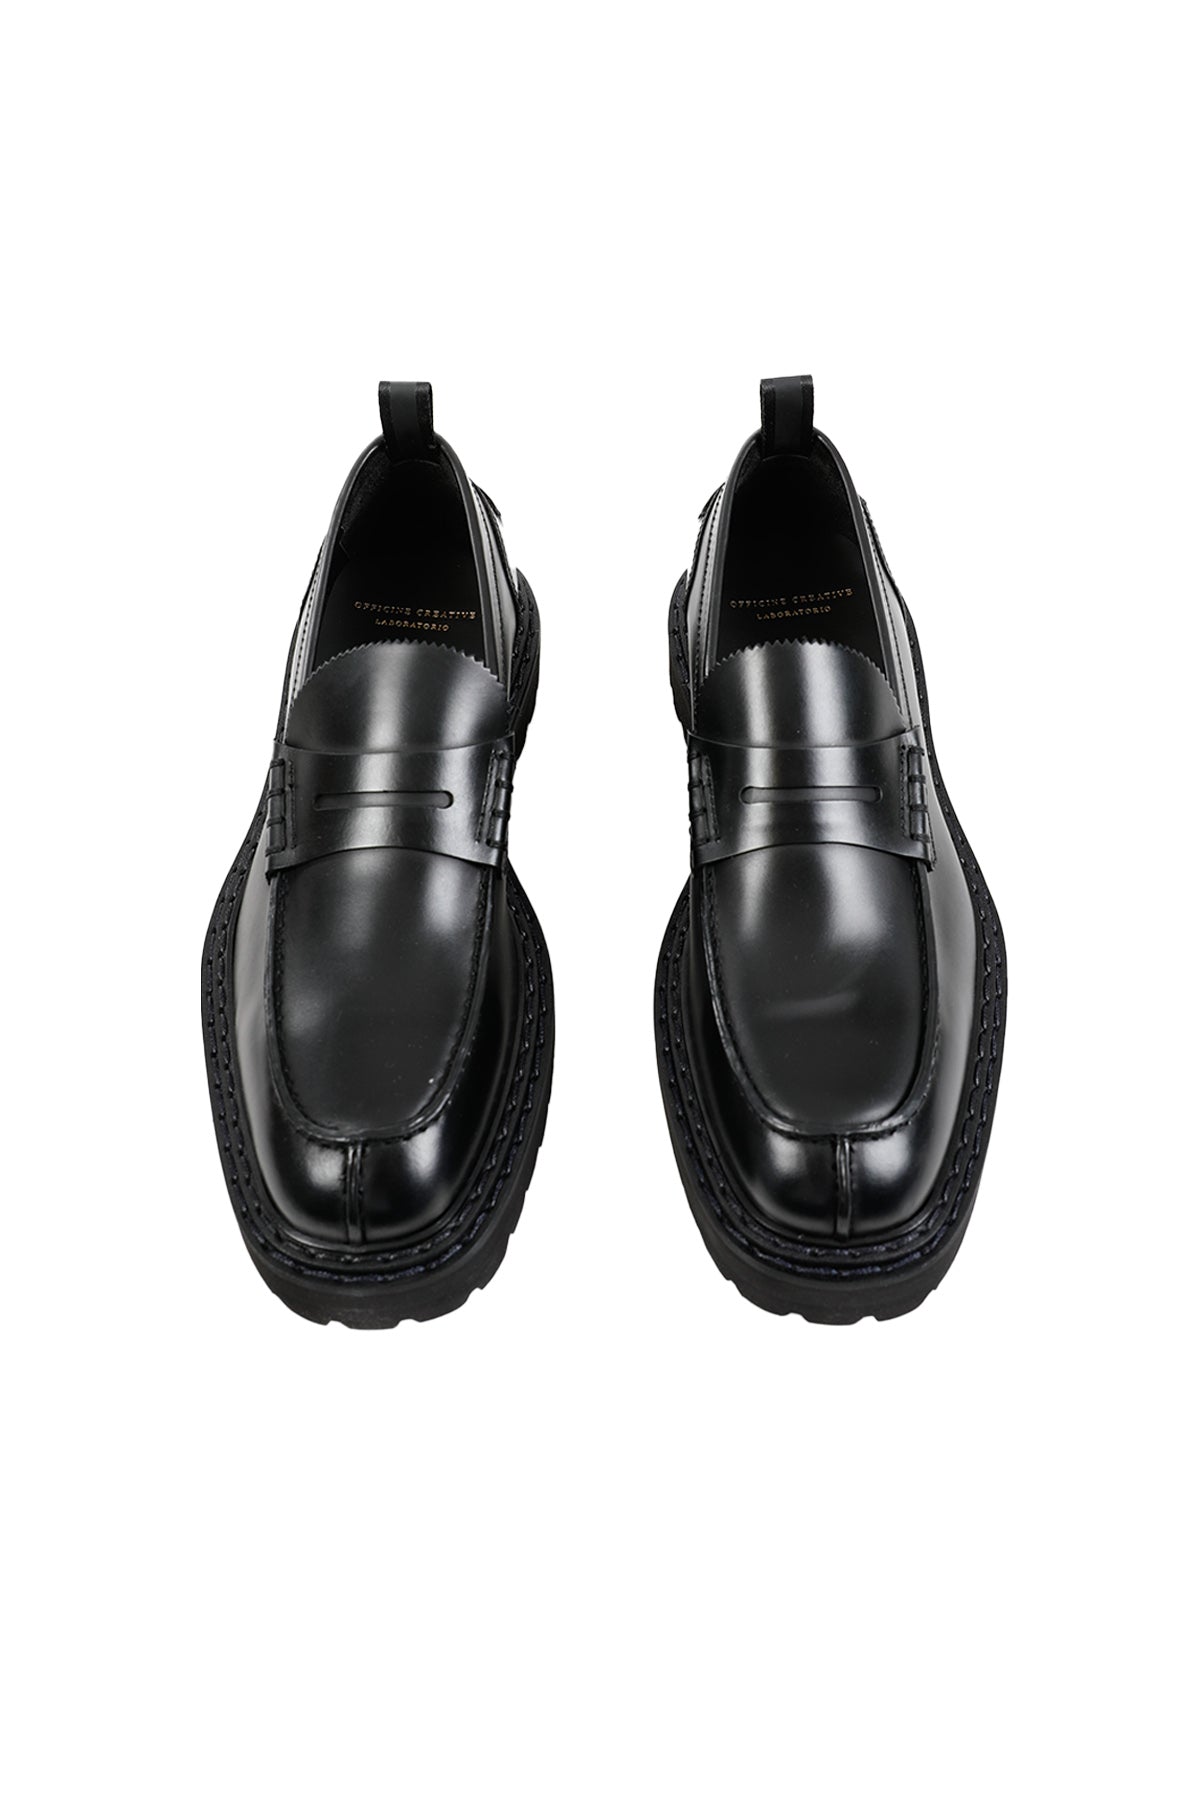 Officine Creative Pistols Deri Loafer Ayakkabı-Libas Trendy Fashion Store